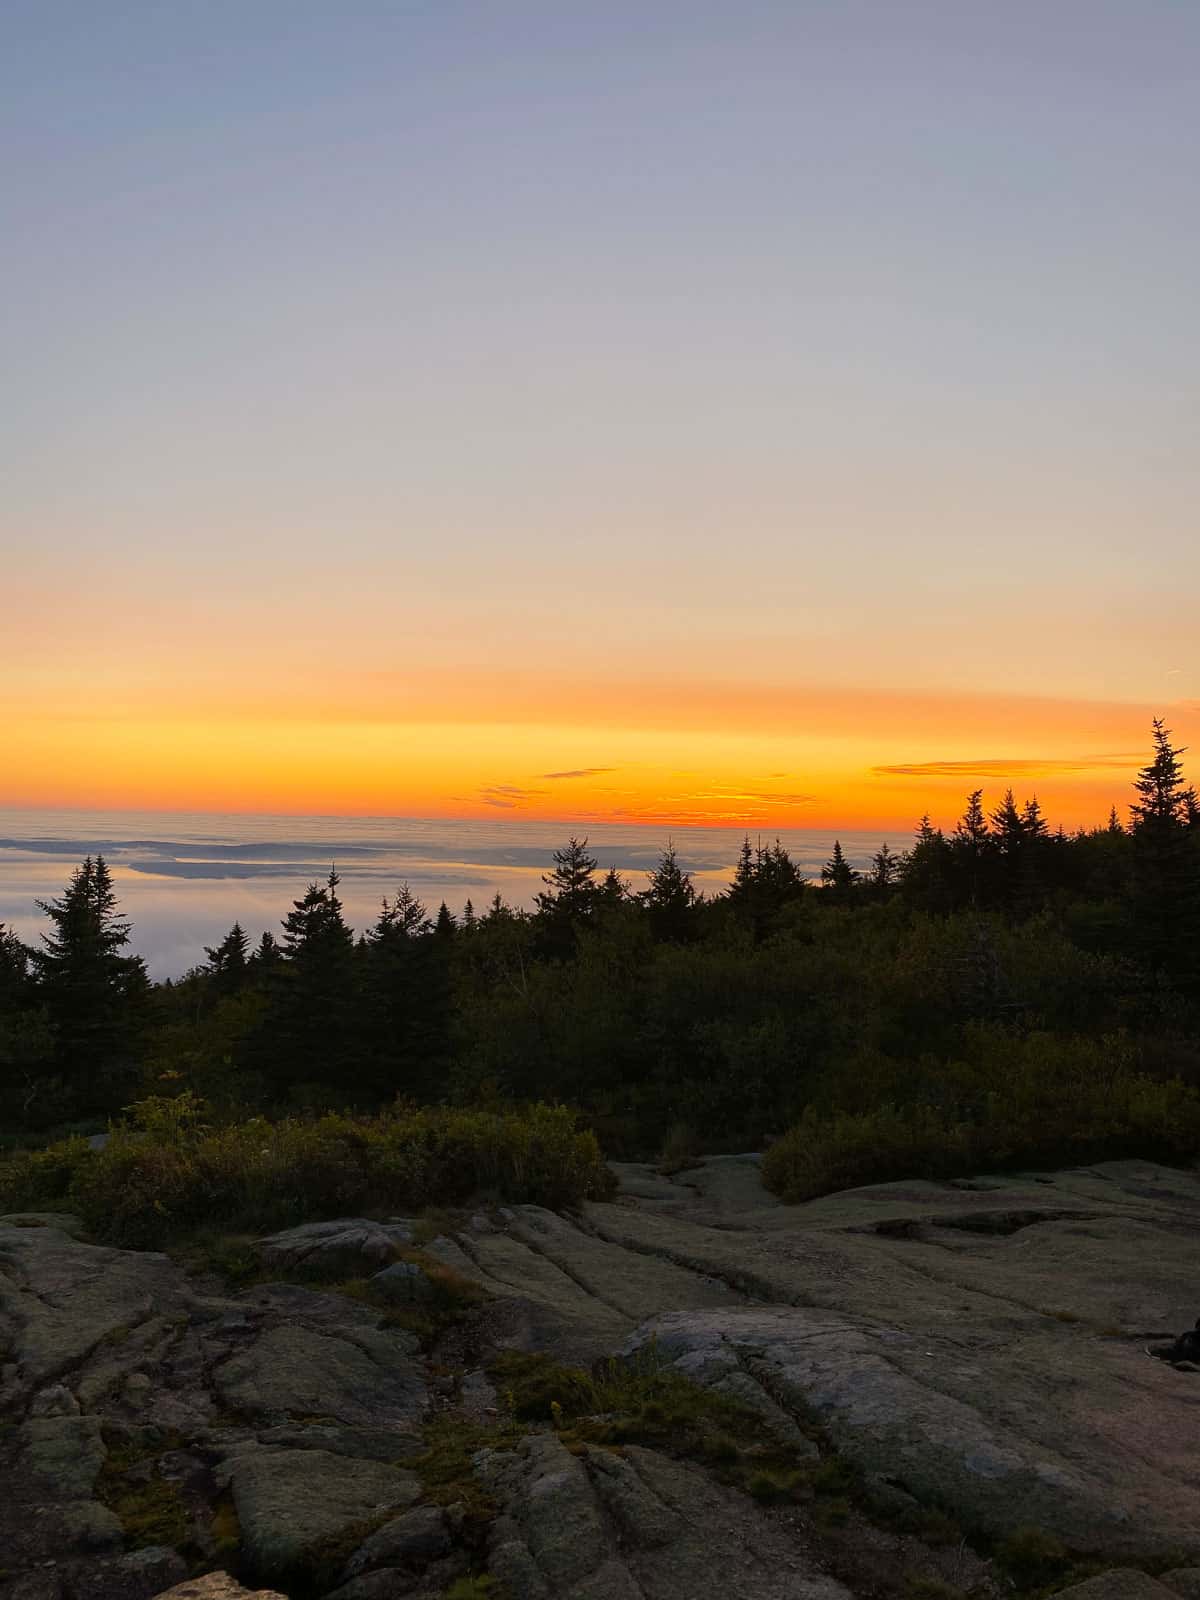 sunrise at Cadillac Mountain near Bar Harbor, Maine